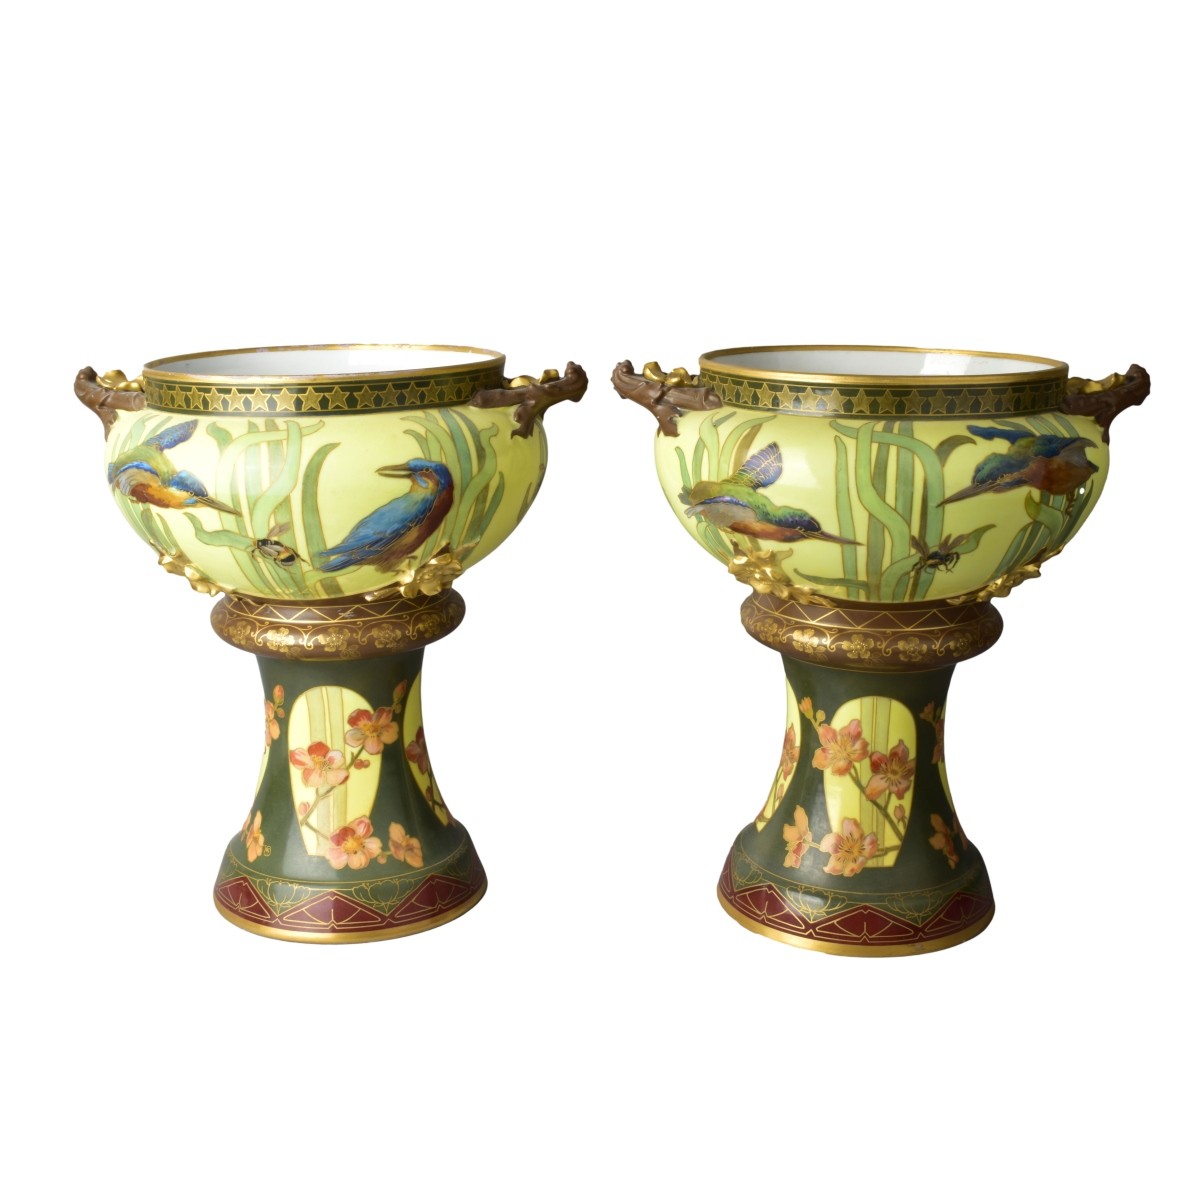 Pair of Pirkenhammer Porcelain JardiniËre